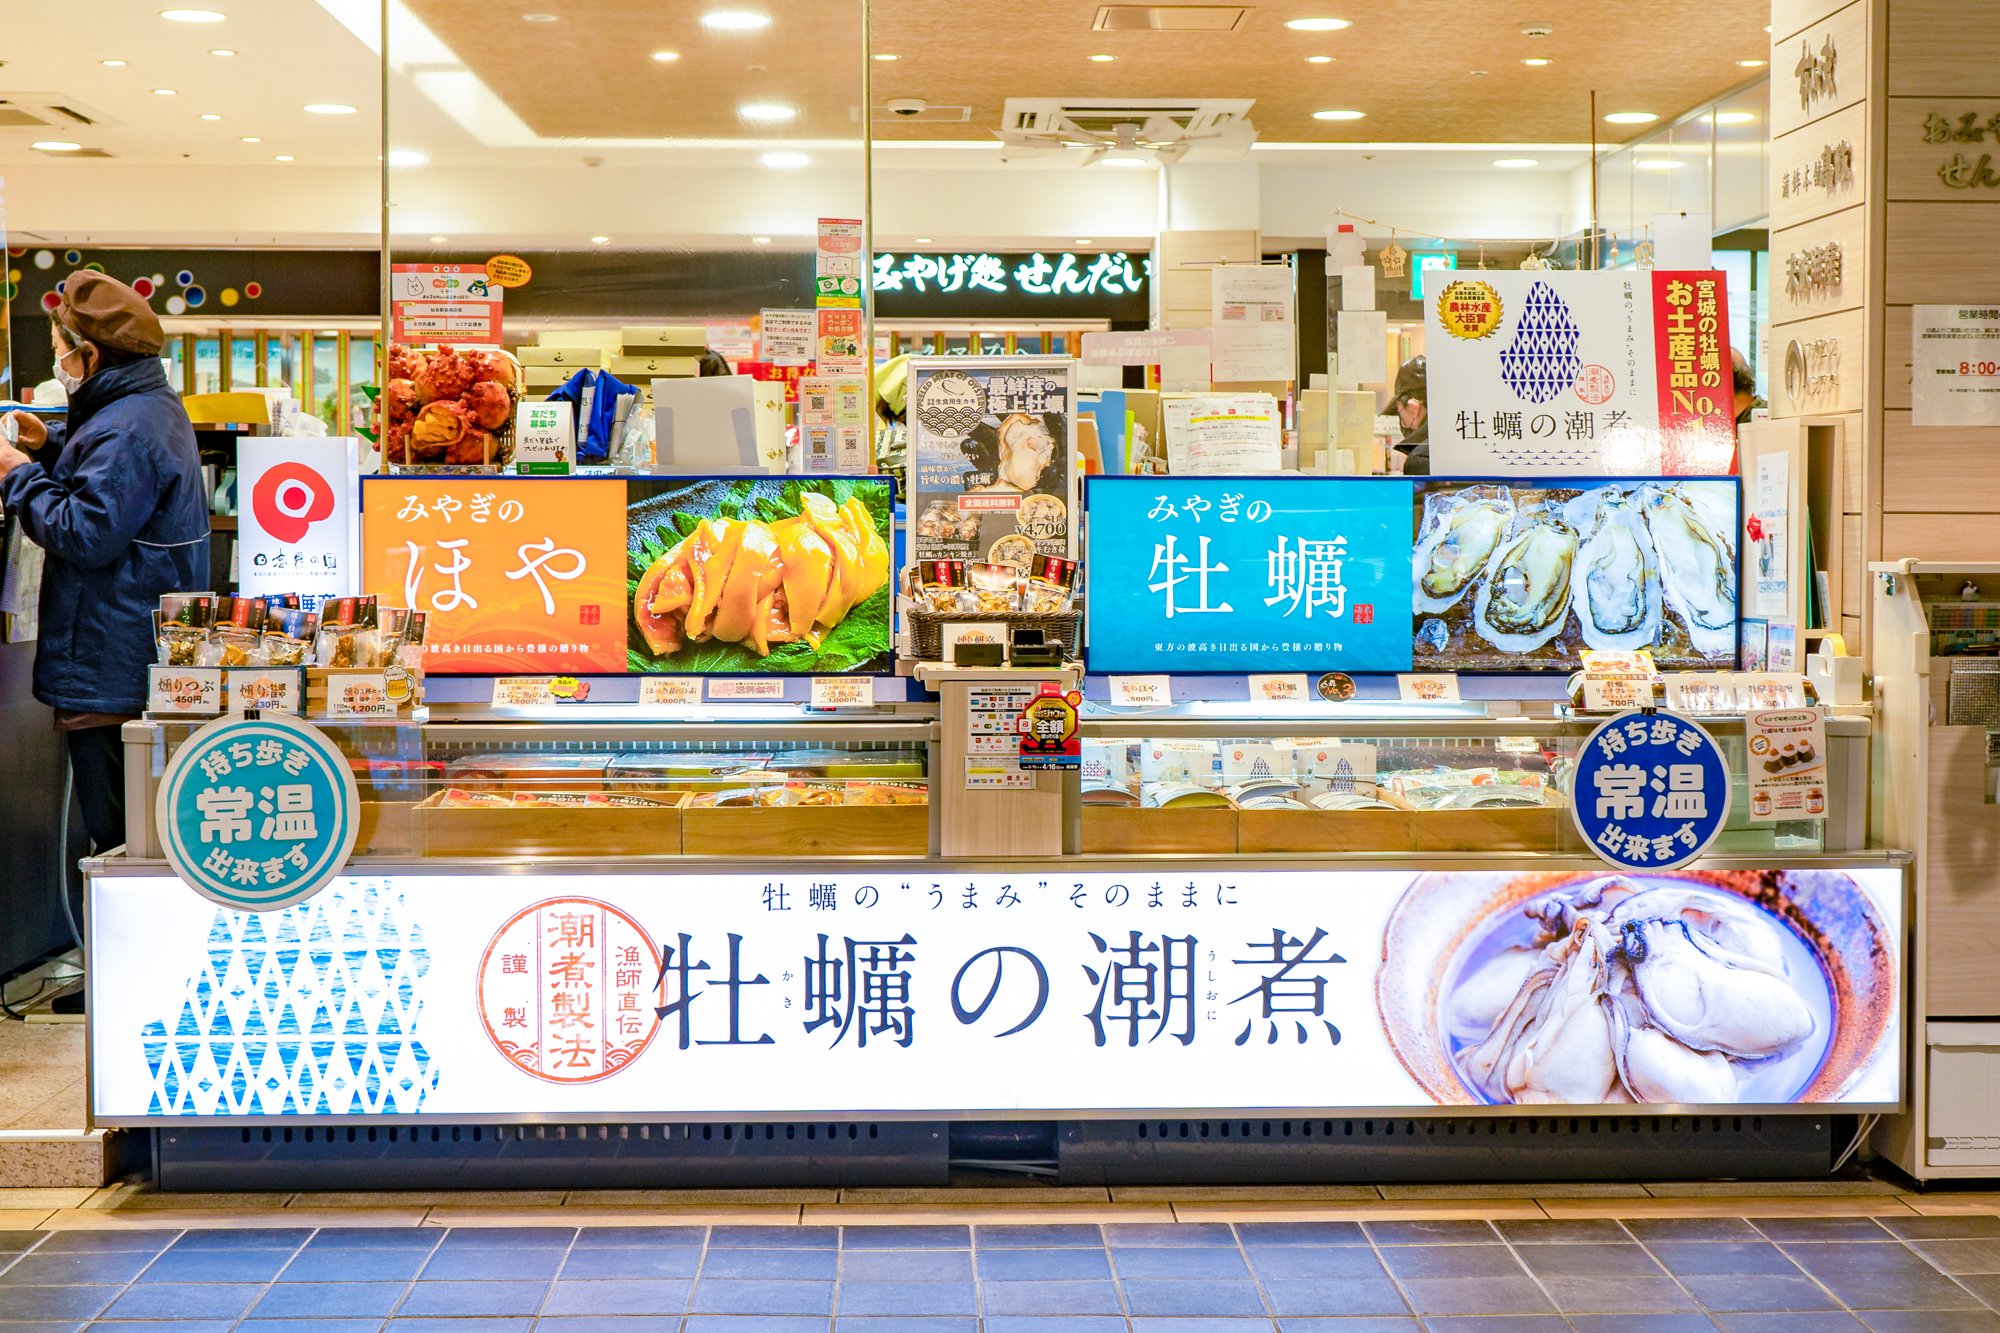 末永海産 仙台駅店をご紹介するサムネイル画像です